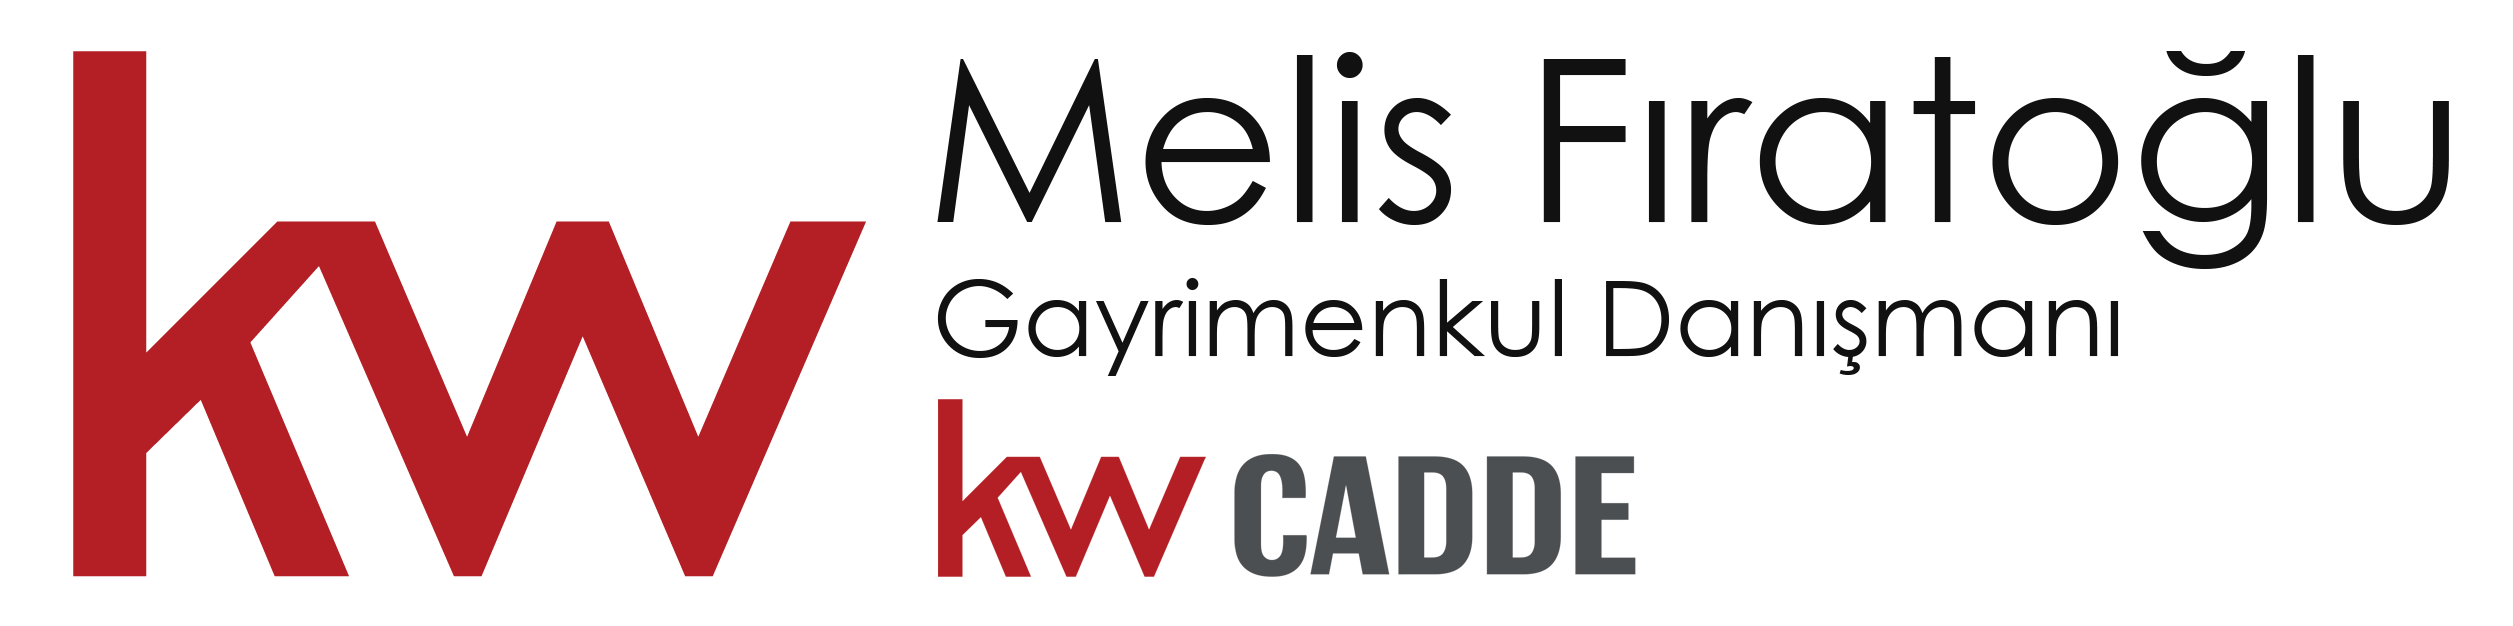 Melis Fıratoğlu • Gayrimenkul Danışmanı · kw Cadde Logo